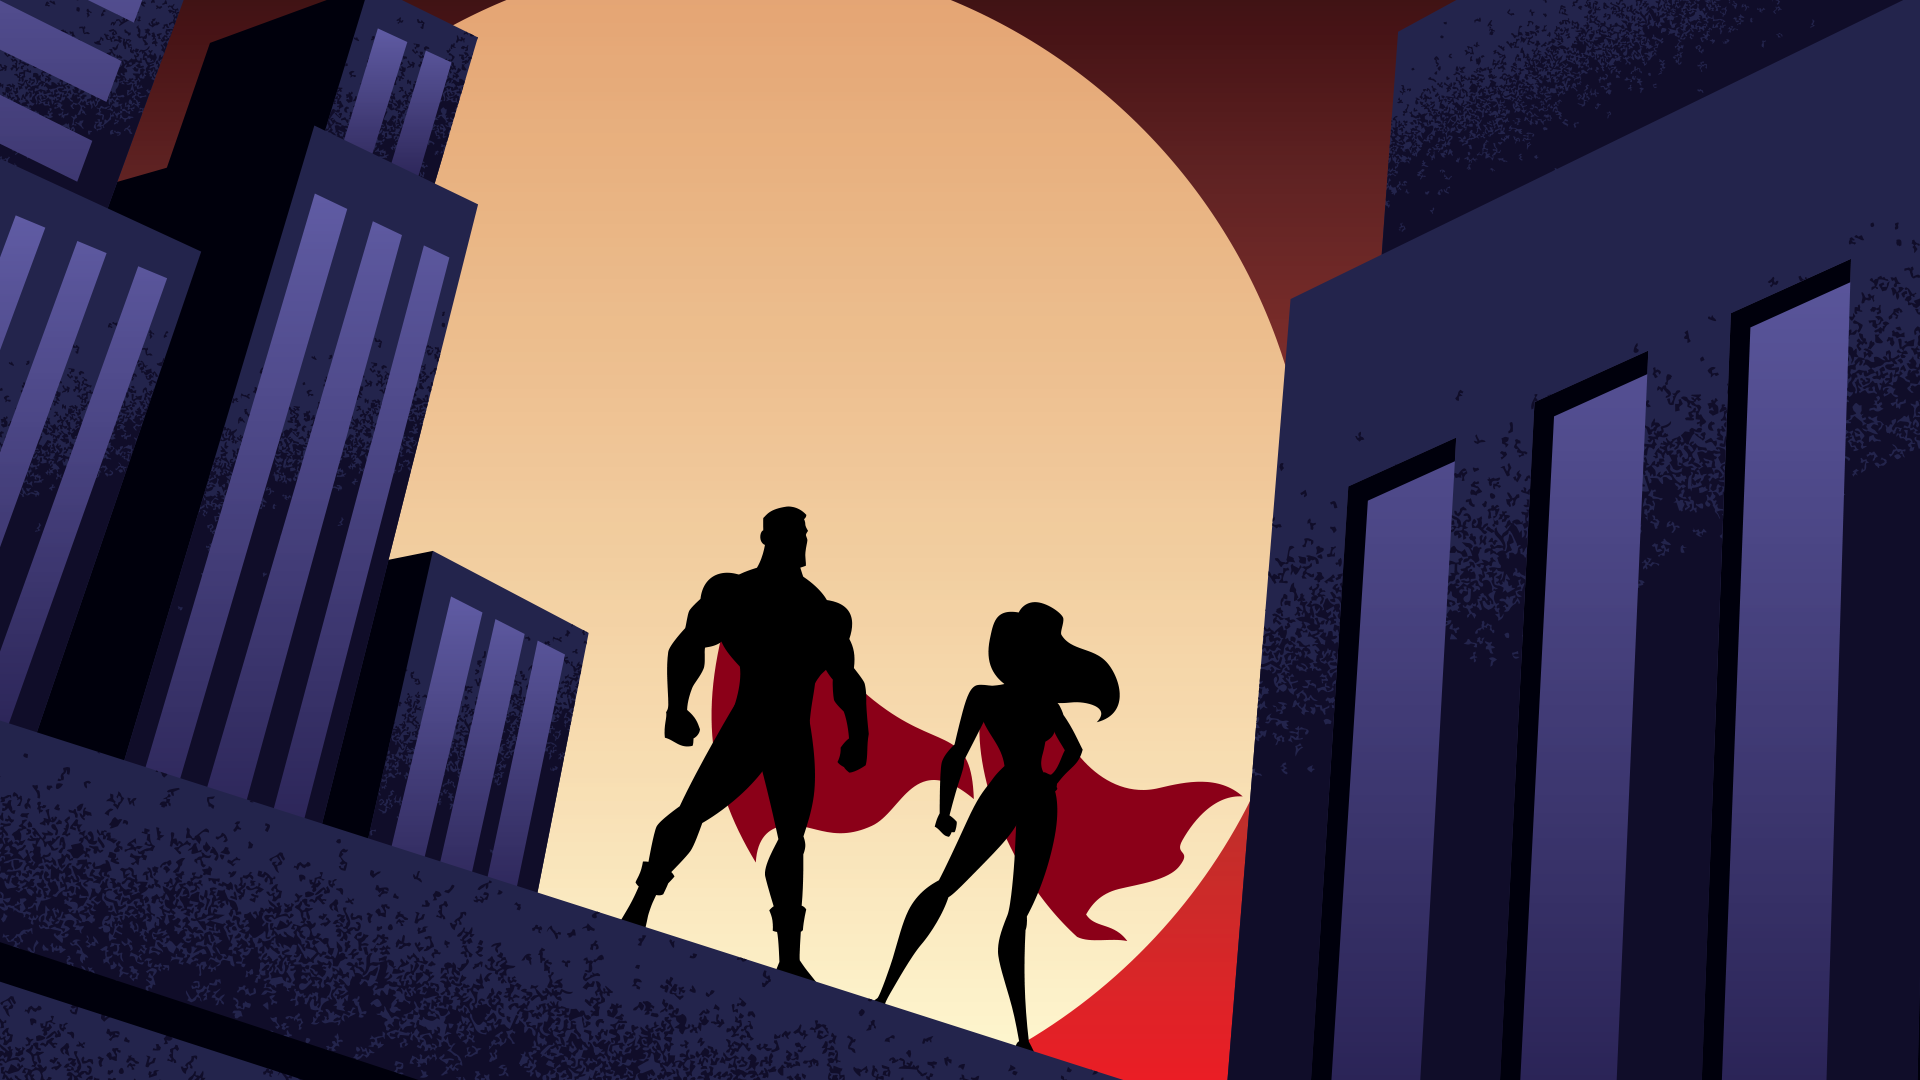 Superheroes in silhouette